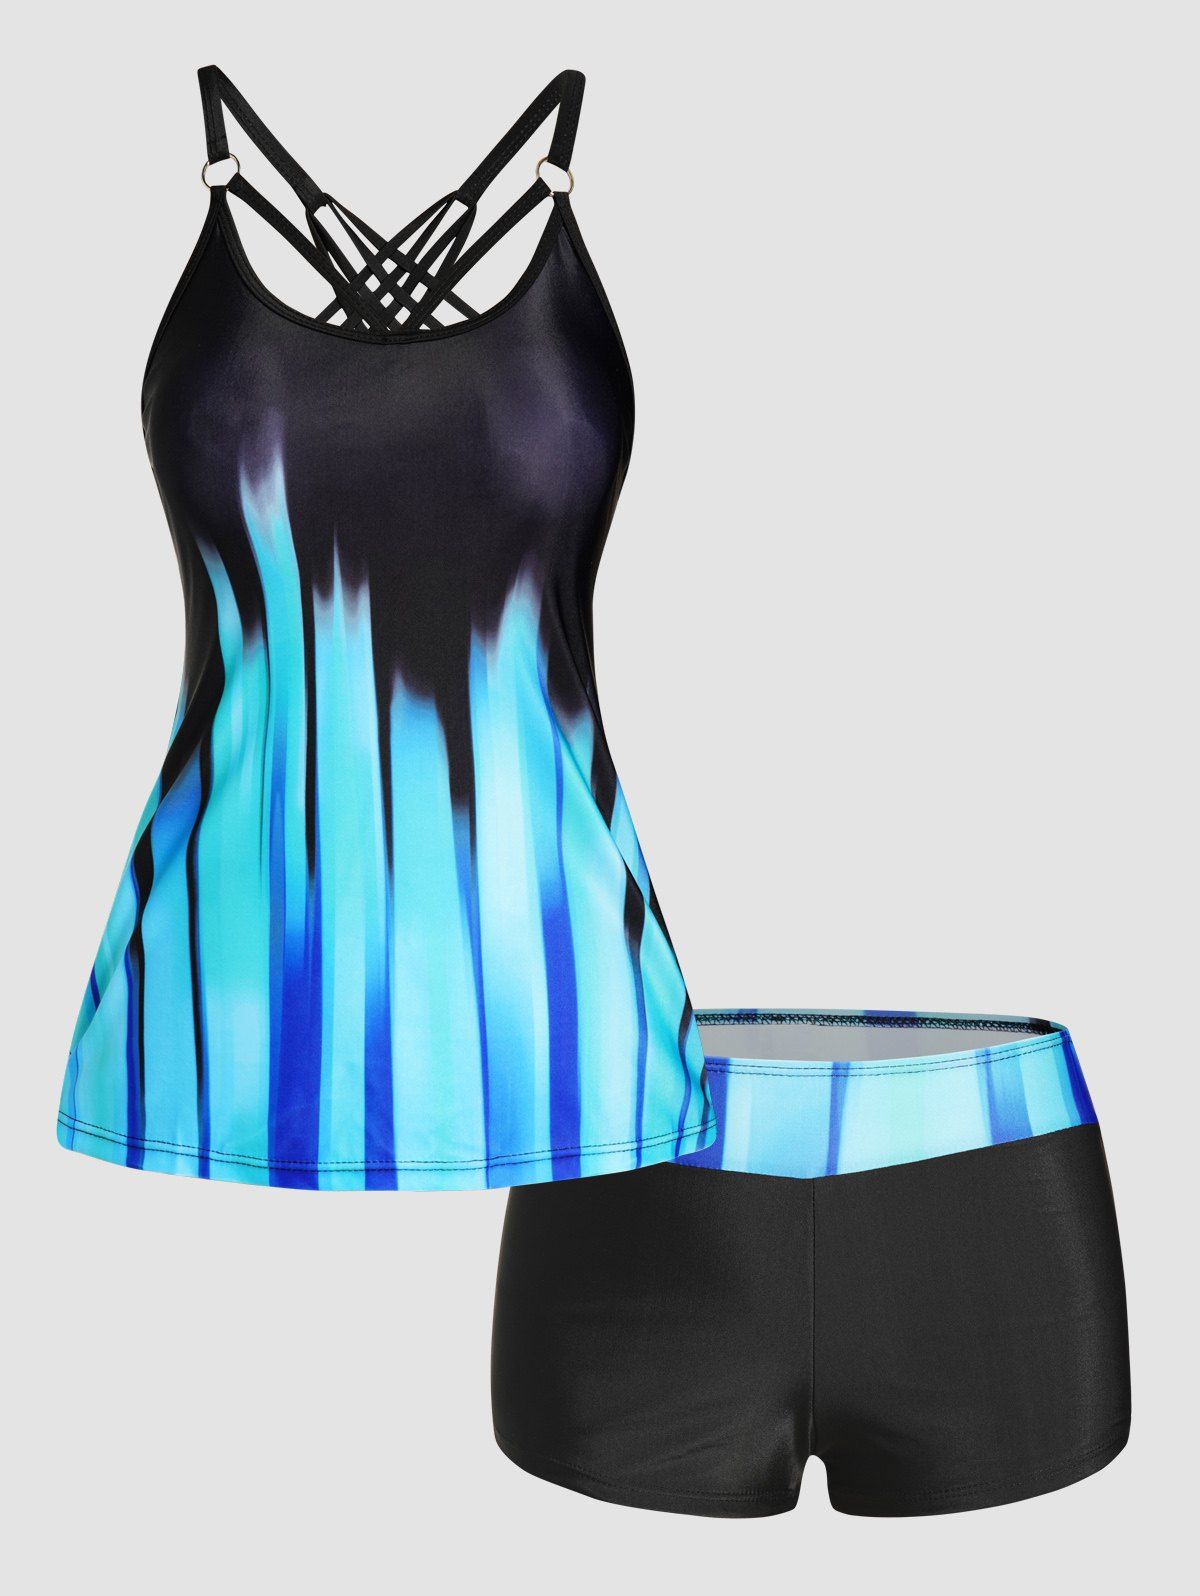 Ombre Stripe Print Tankini Swimsuit Crisscross Padded Tankini Two Piece Swimwear Boyleg Bathing Suit - BLUE 3XL